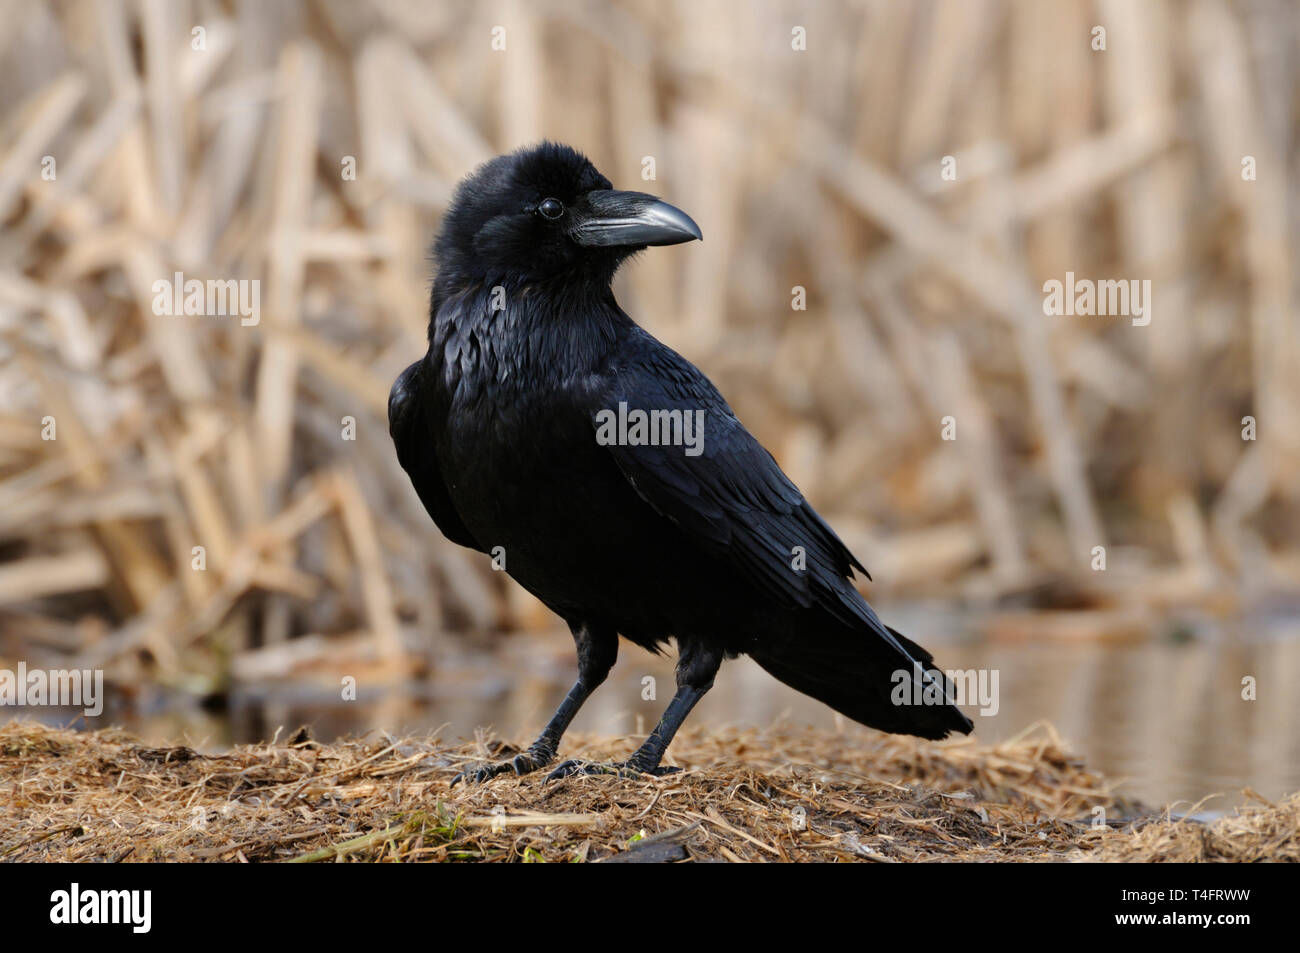 Grand Corbeau Corvus corax / Kolkrabe ( ) perché sur le terrain, descriptions close-up, noir brillant plumage, regardant attentivement, de la faune, de l'Europe. Banque D'Images